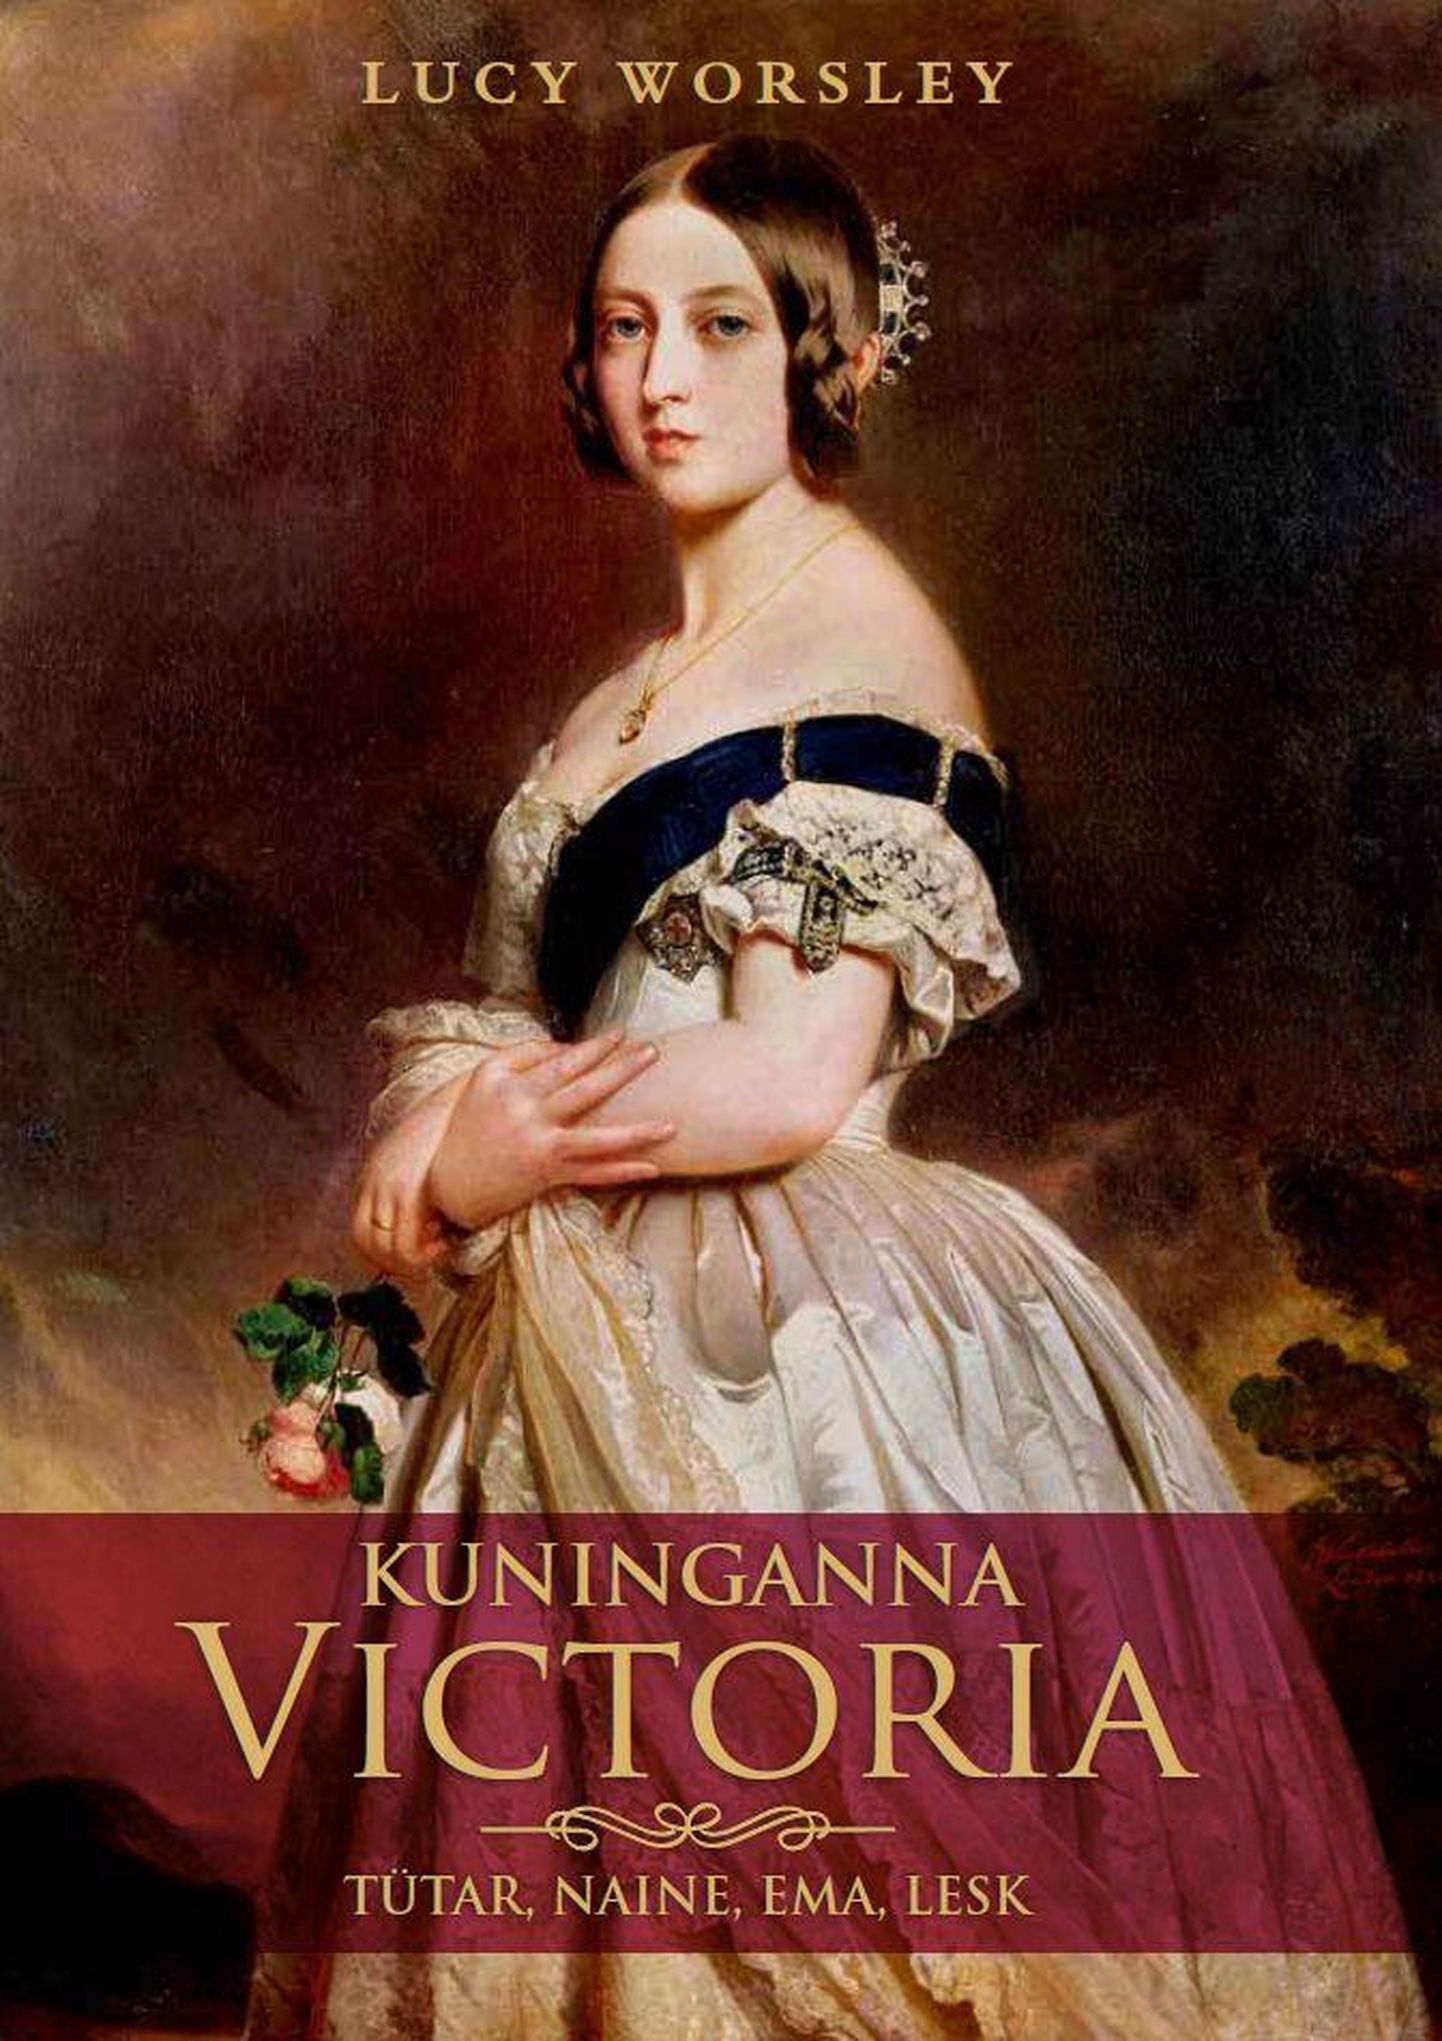 «Kuninganna Victoria: tütar, naine, ema, lesk».